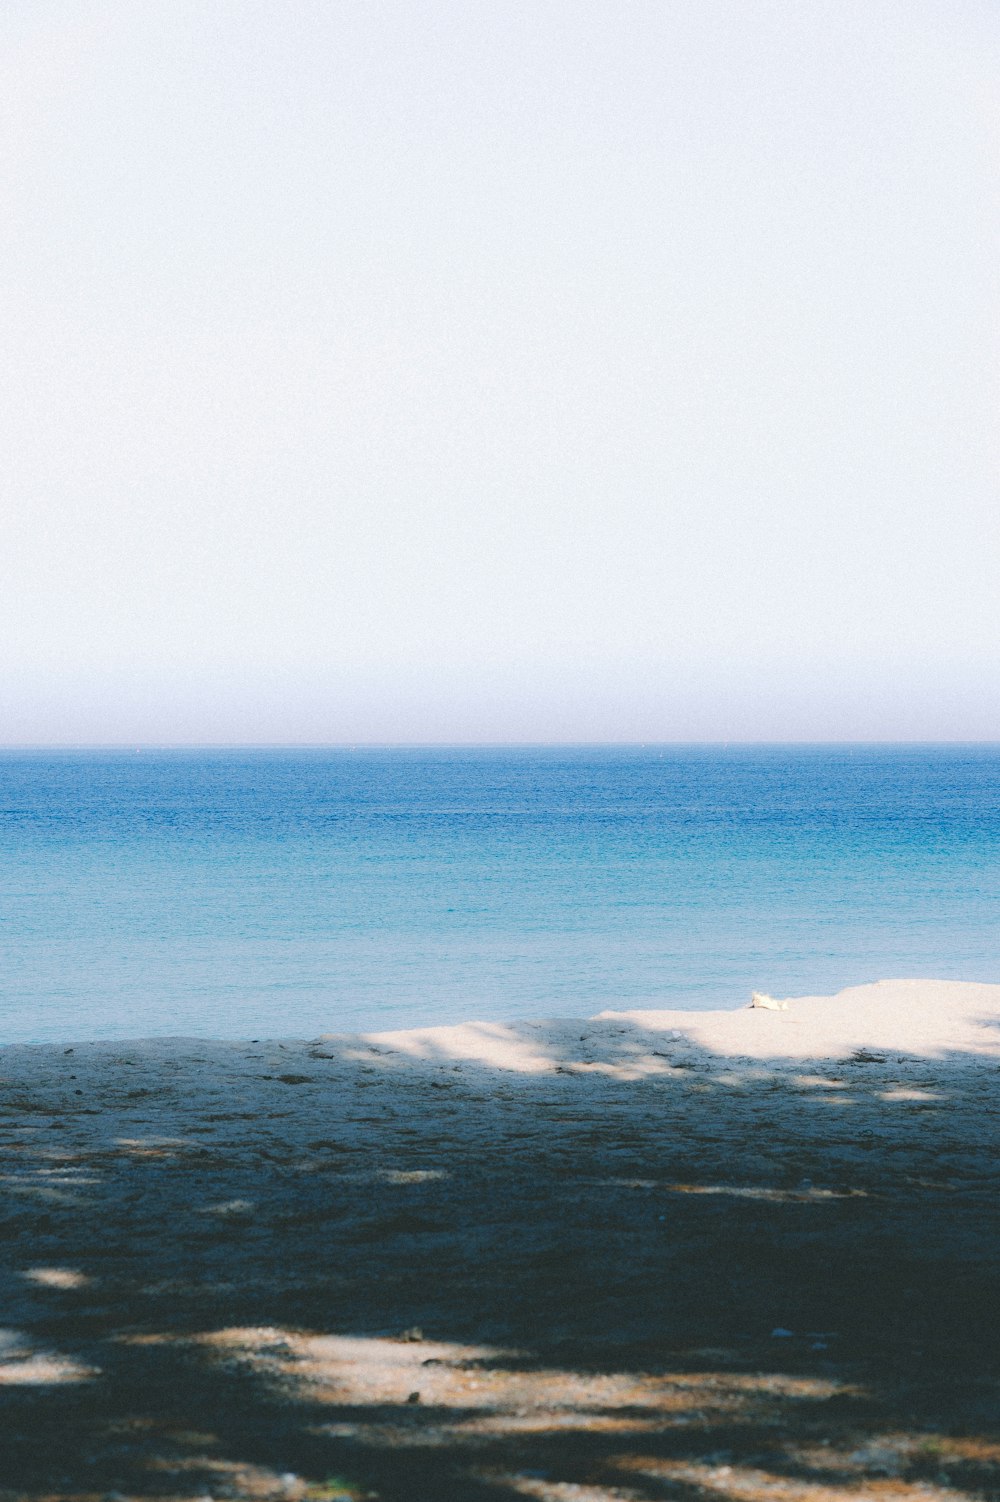 Fotografía de océanos en calma